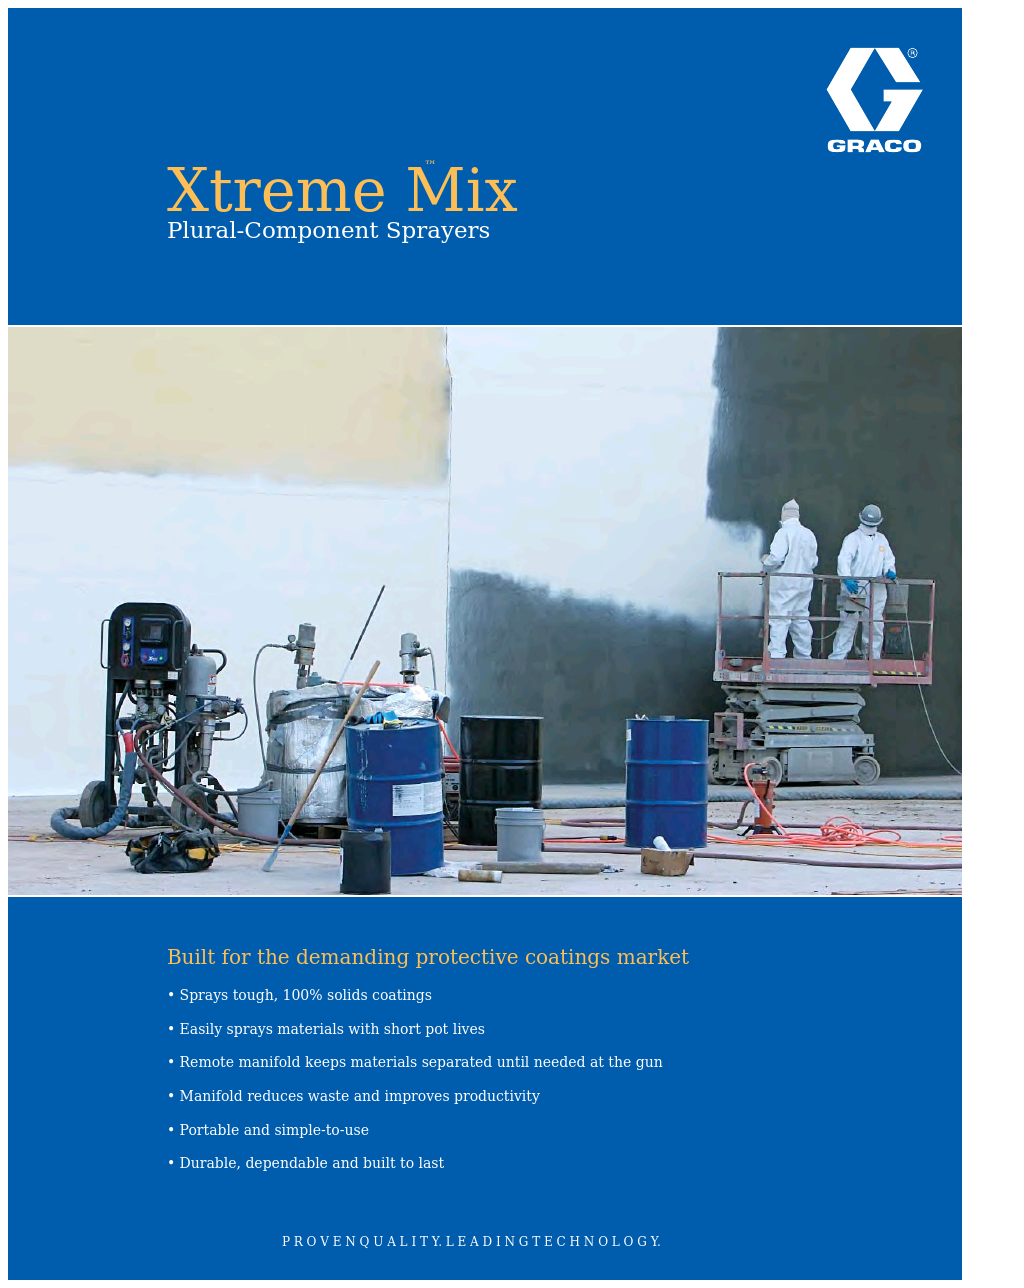 Xtreme Mix XTR701